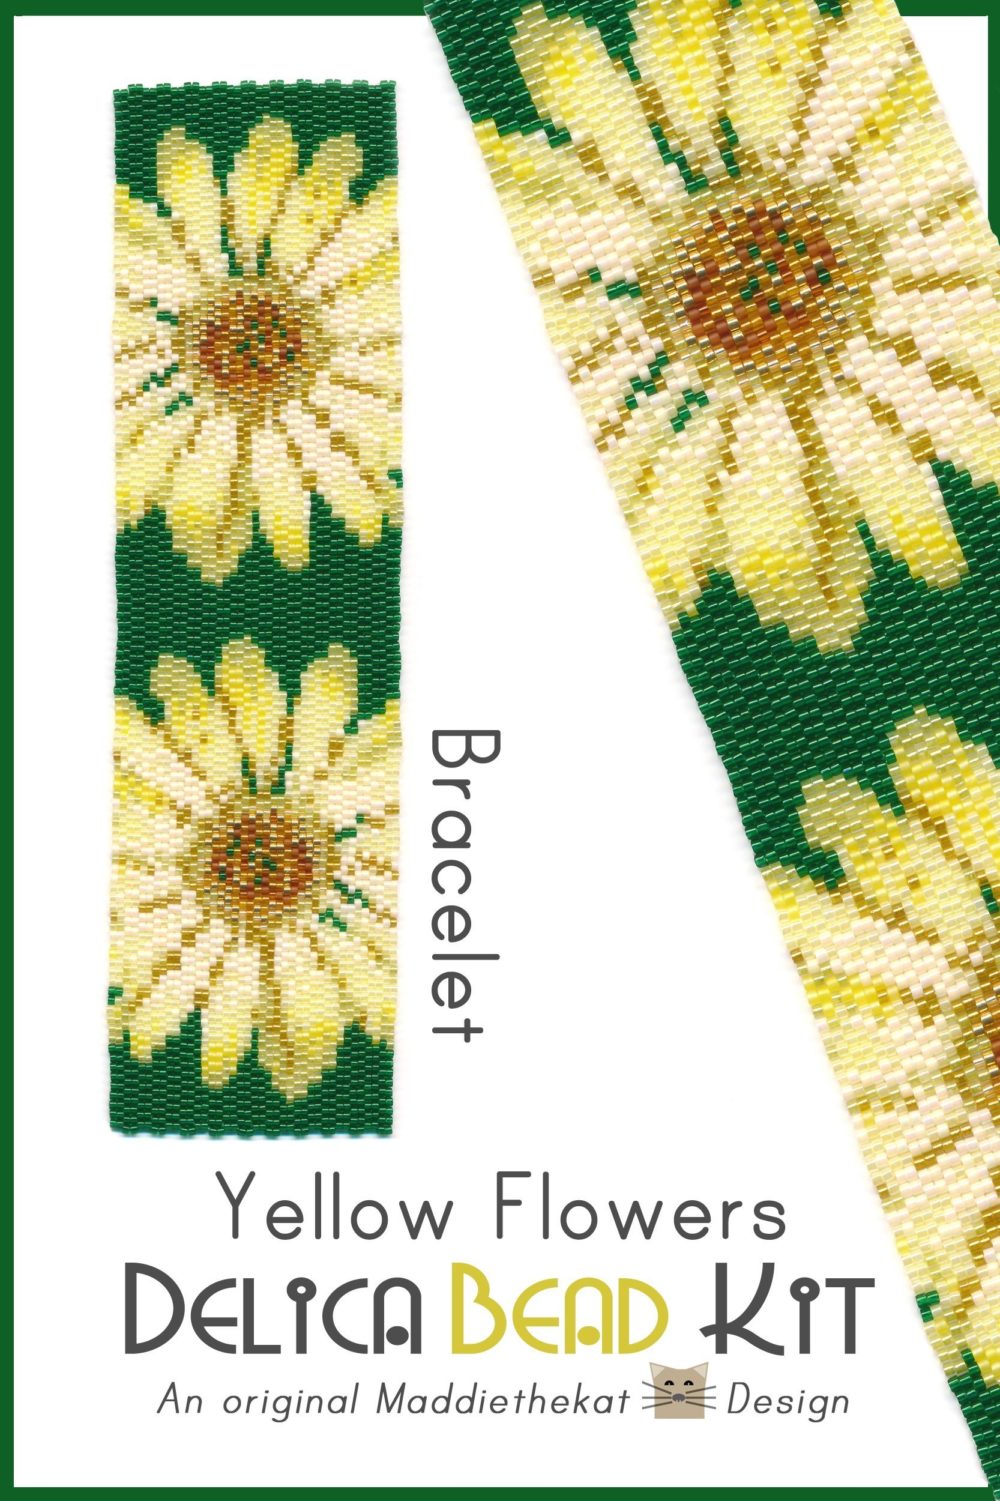 Yellow Flowers Wide Cuff Bracelet 2-Drop Peyote Bead Pattern or Bead Kit